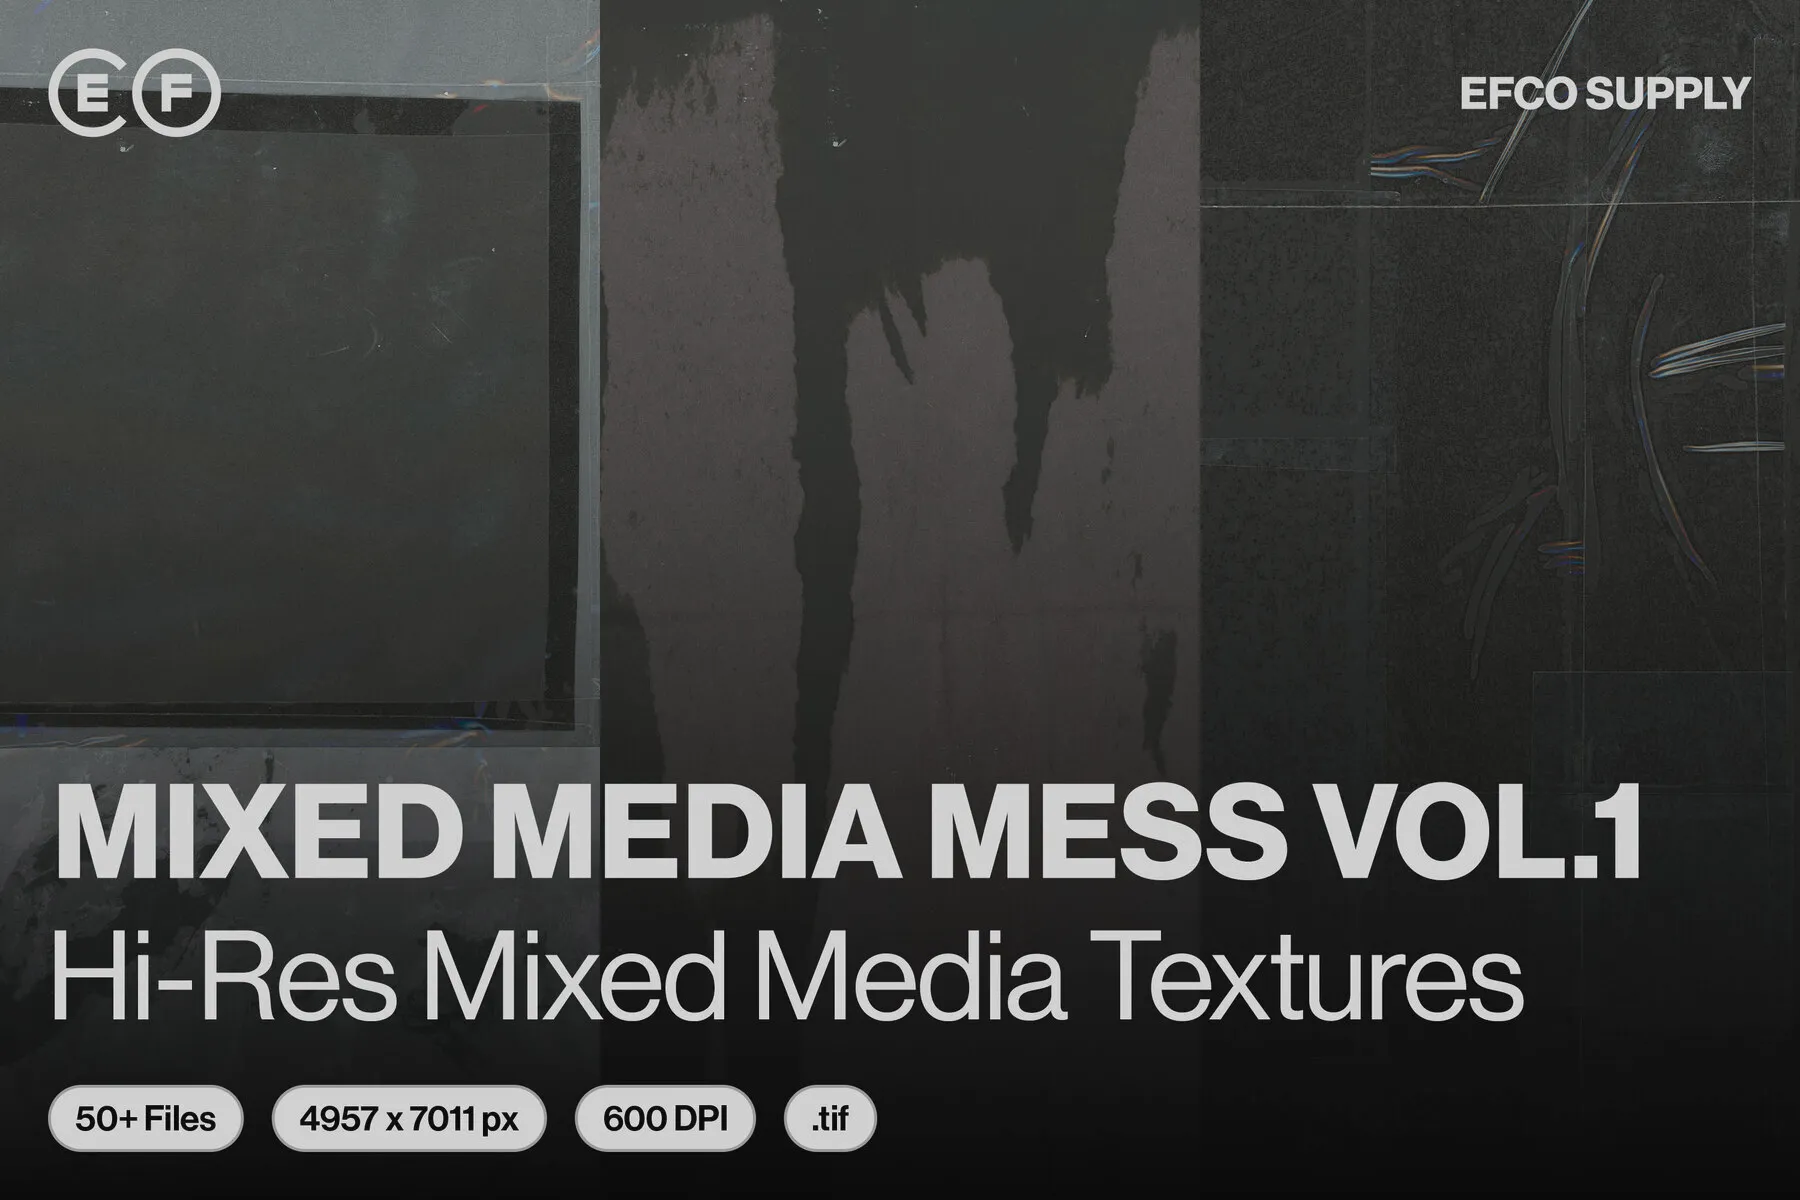 Mixed Media Mess Vol.1